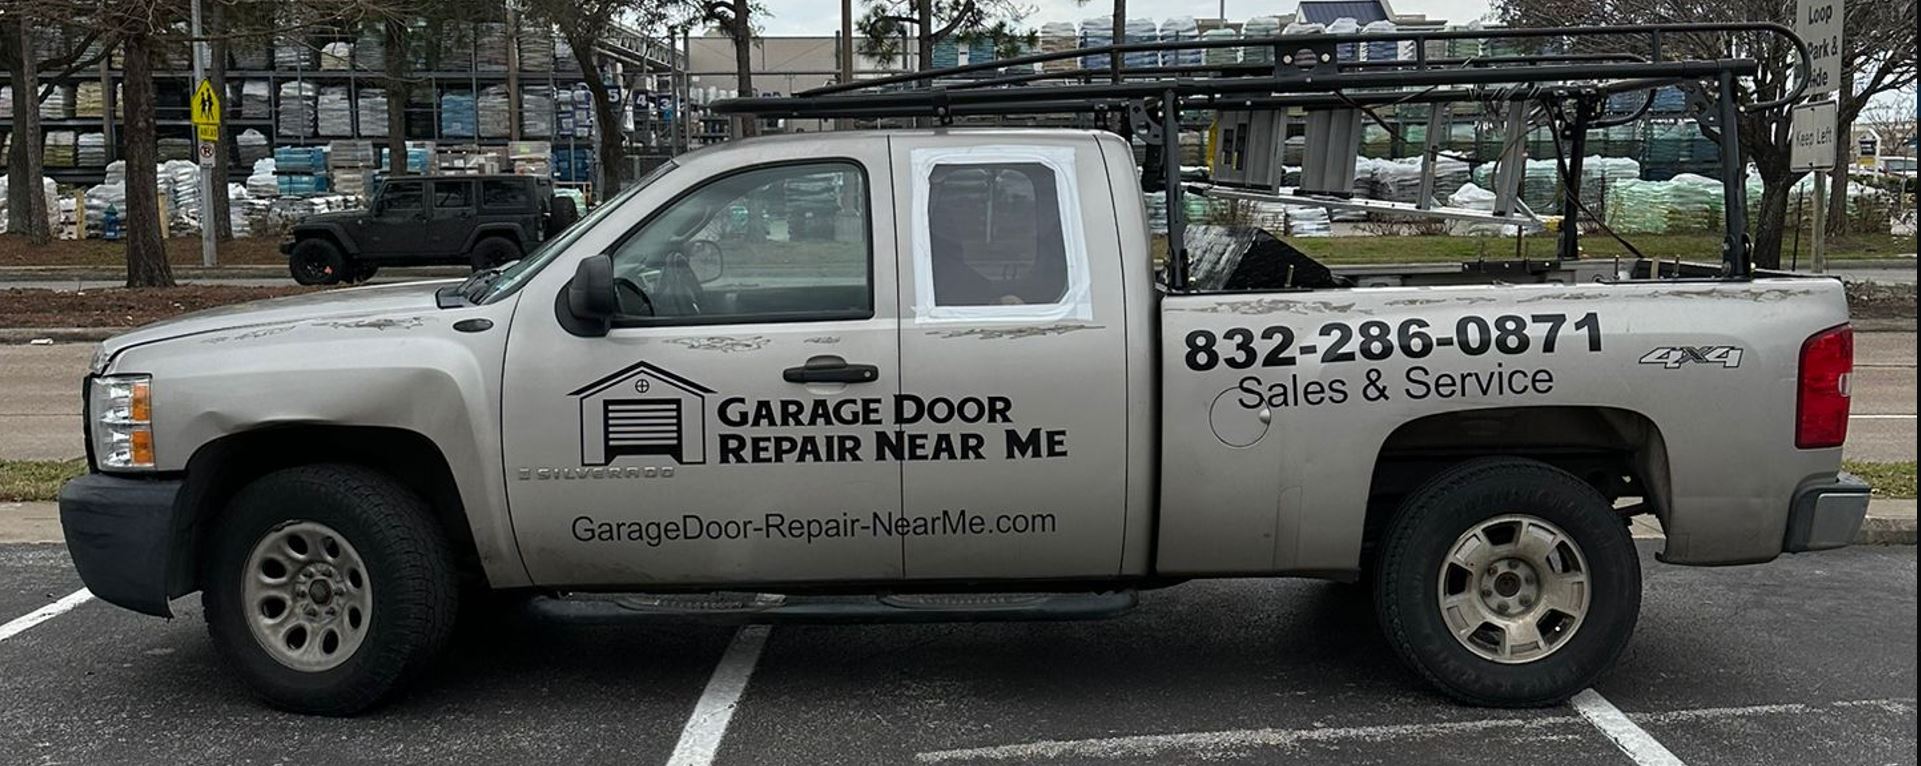 Top-Rated Local Garage Door Repair Service